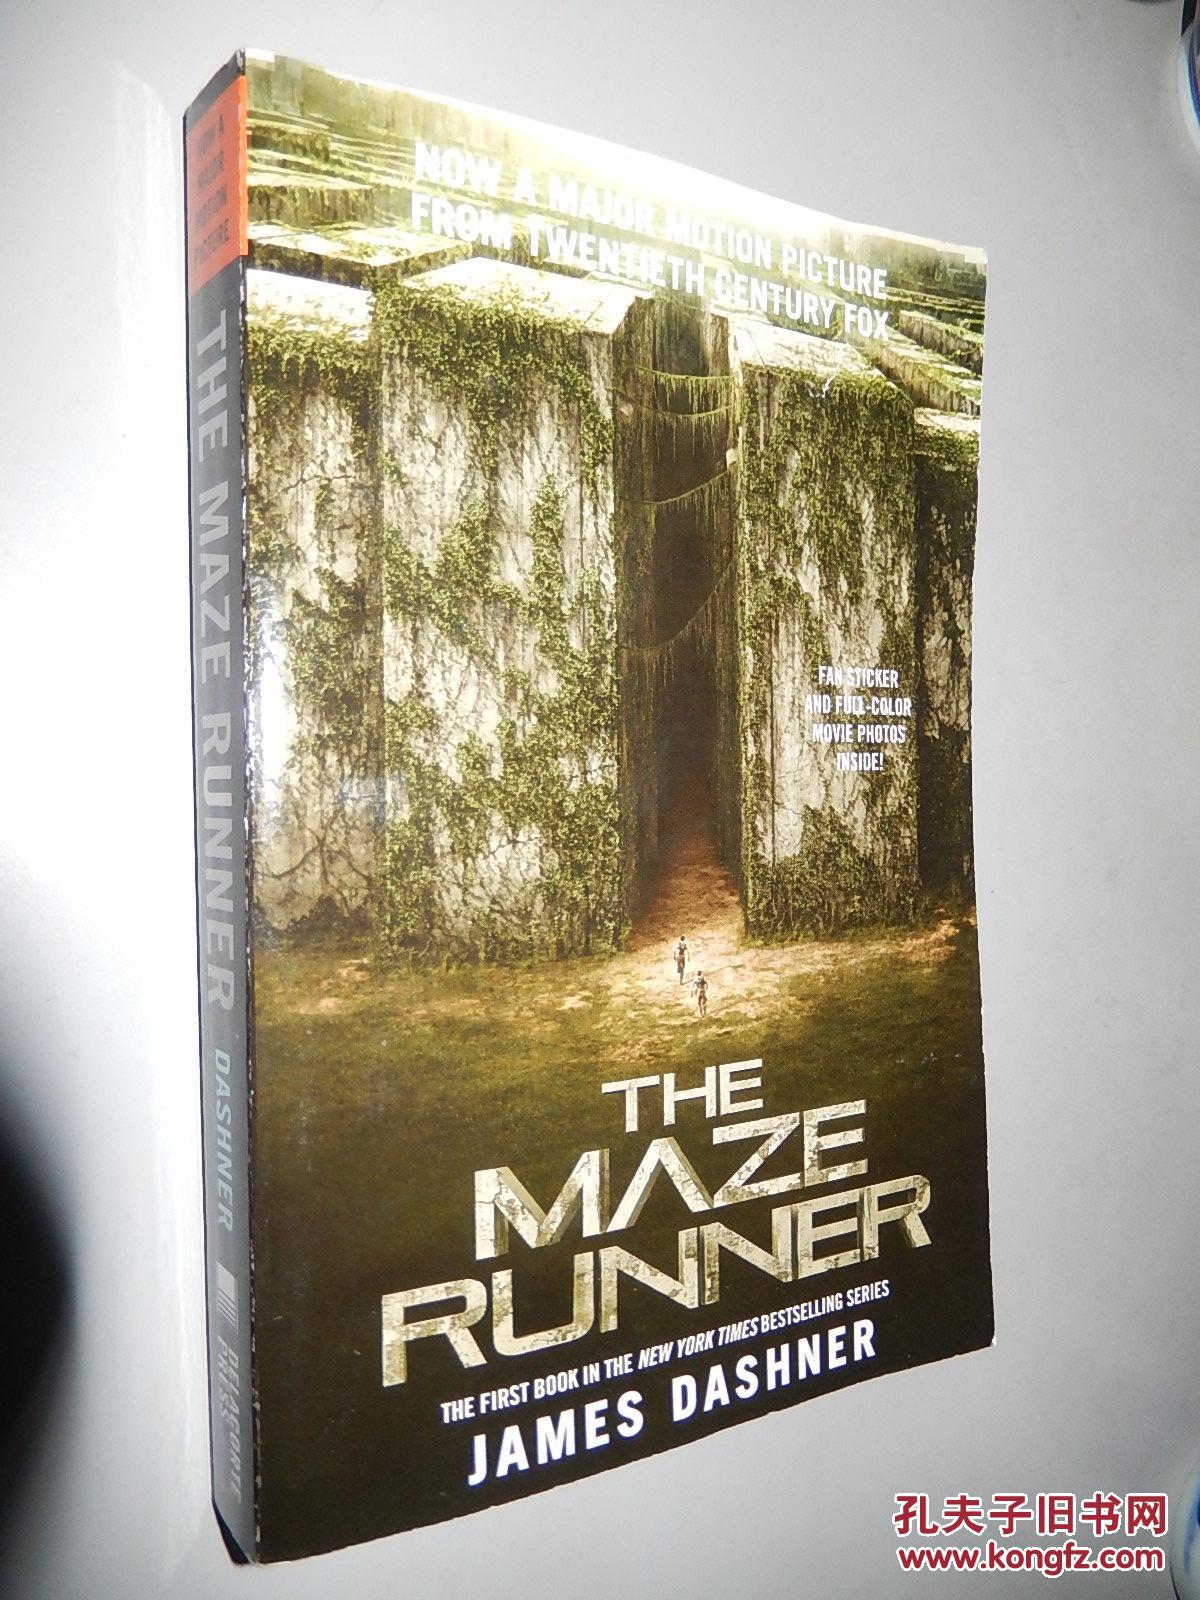 The Maze Runner by James Dashner 英文原版 正版